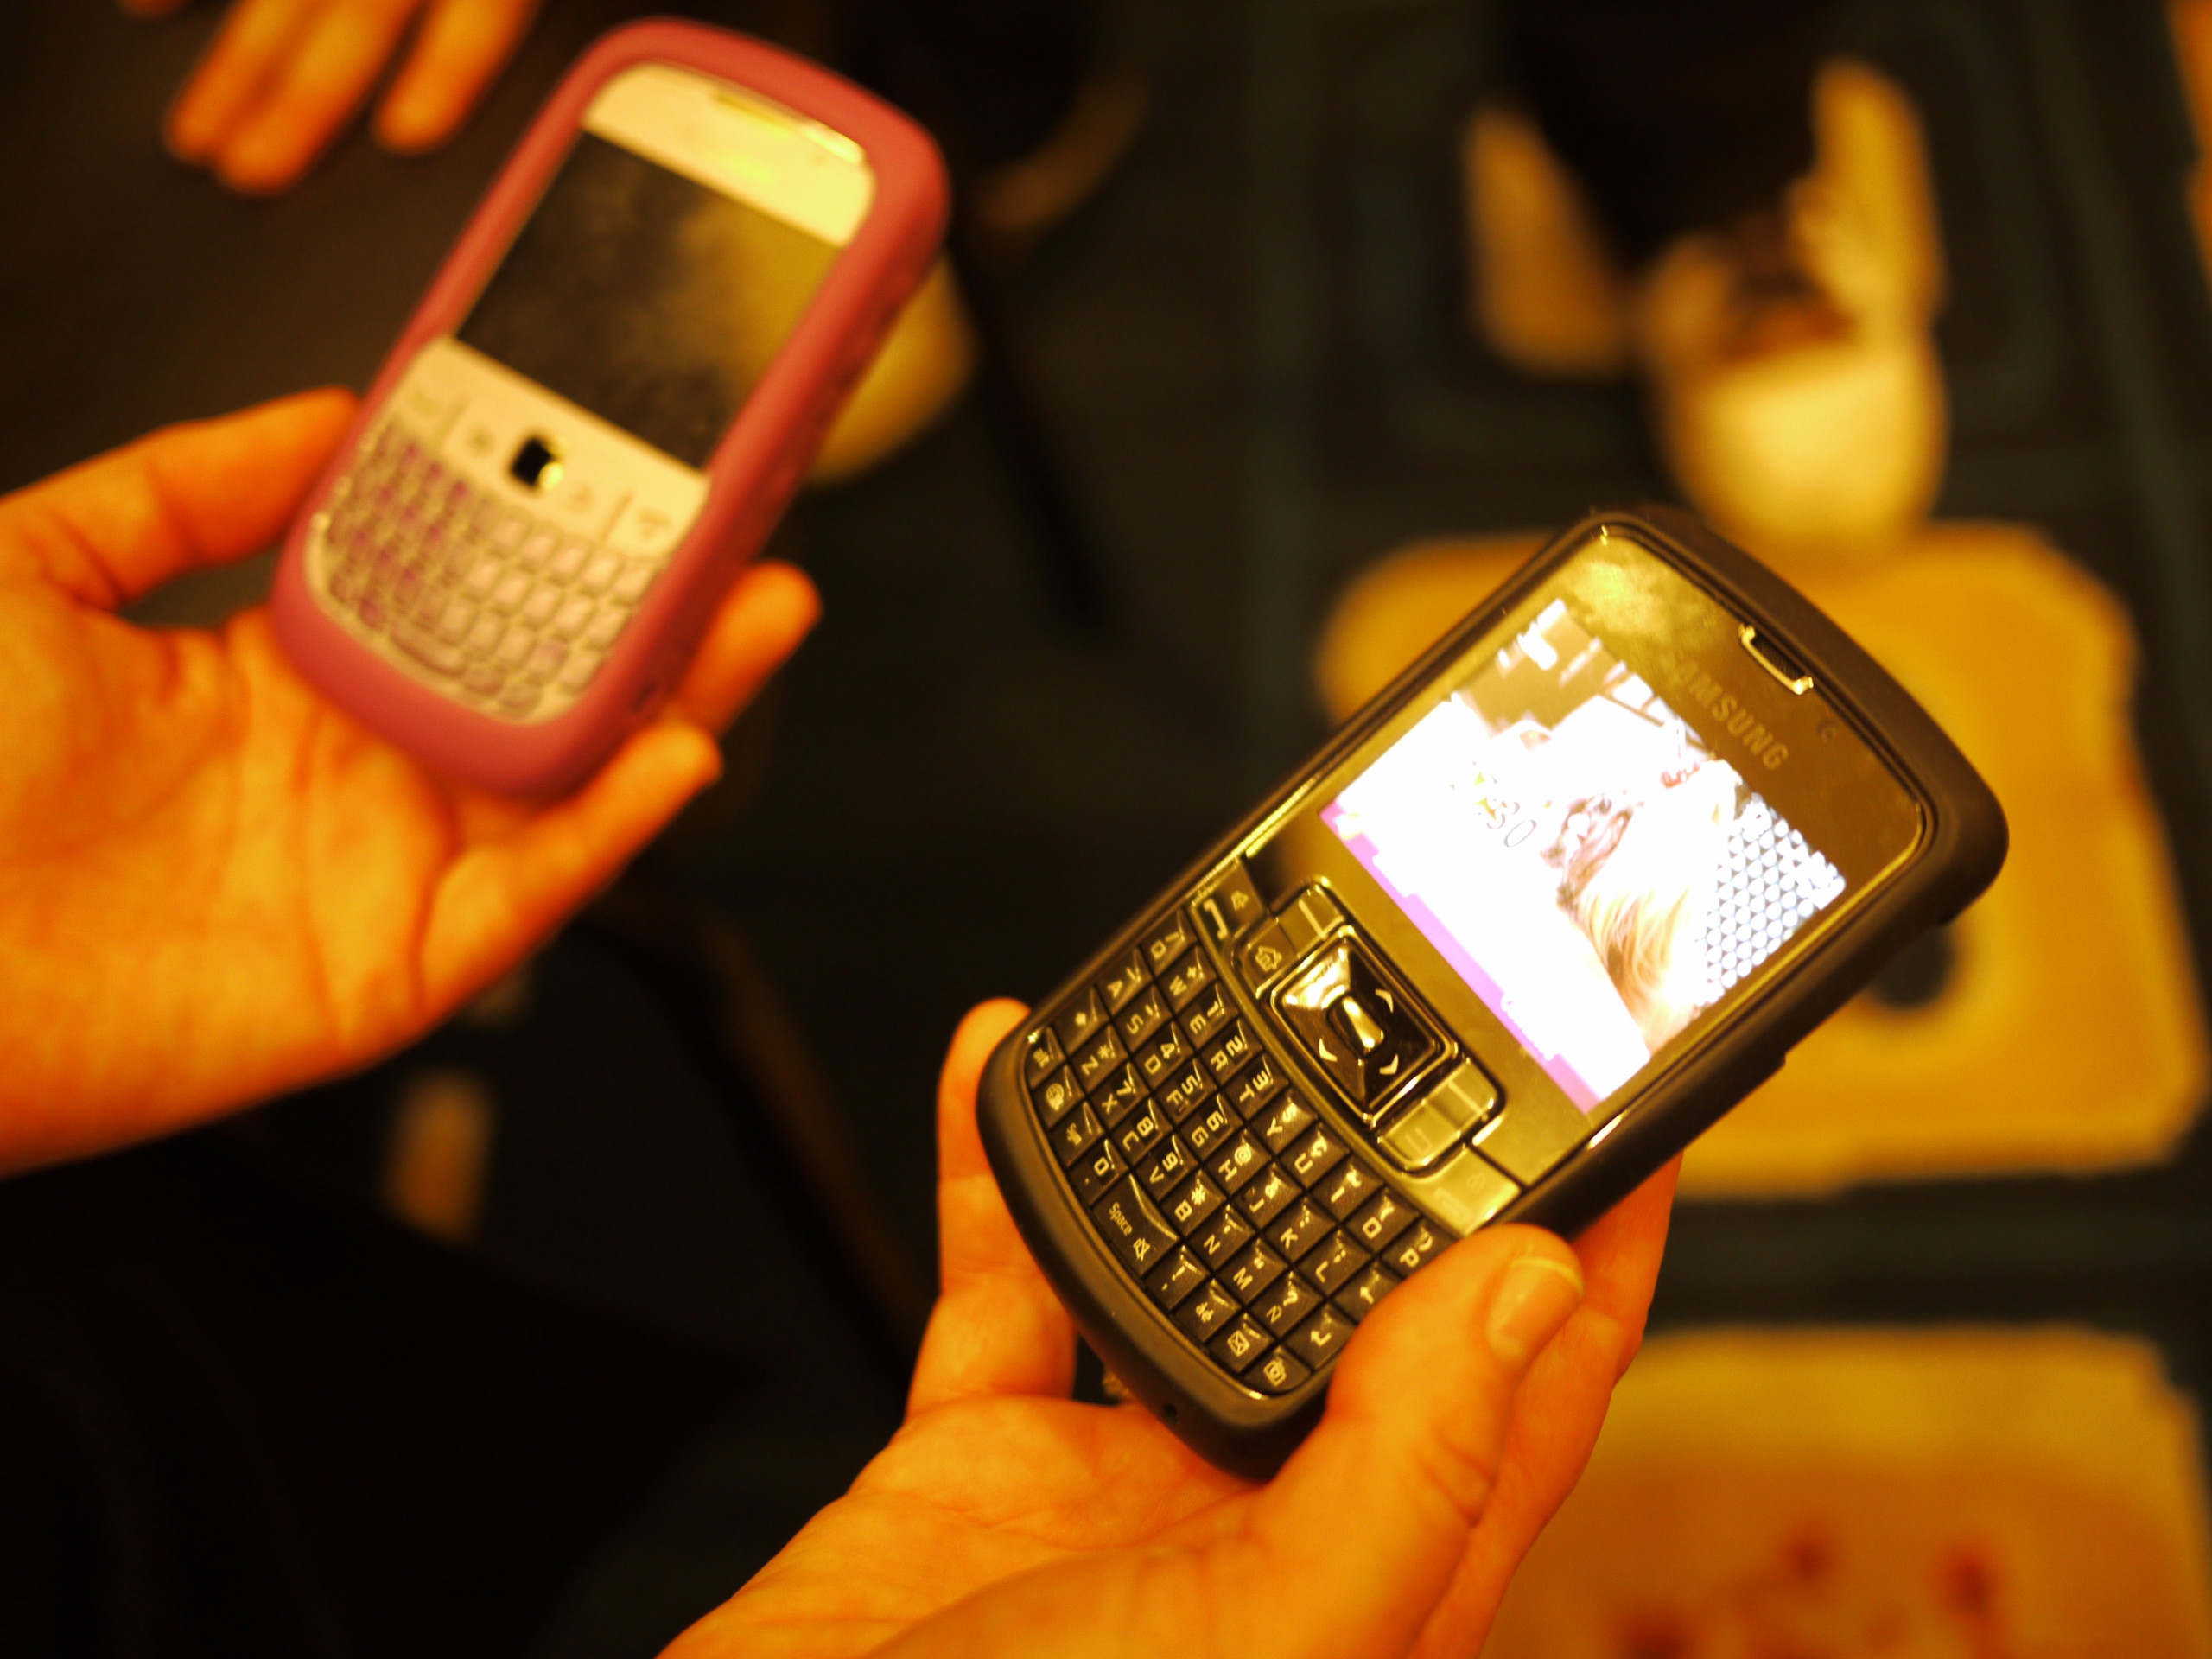 Samsung_vs_Blackberry_Brazil